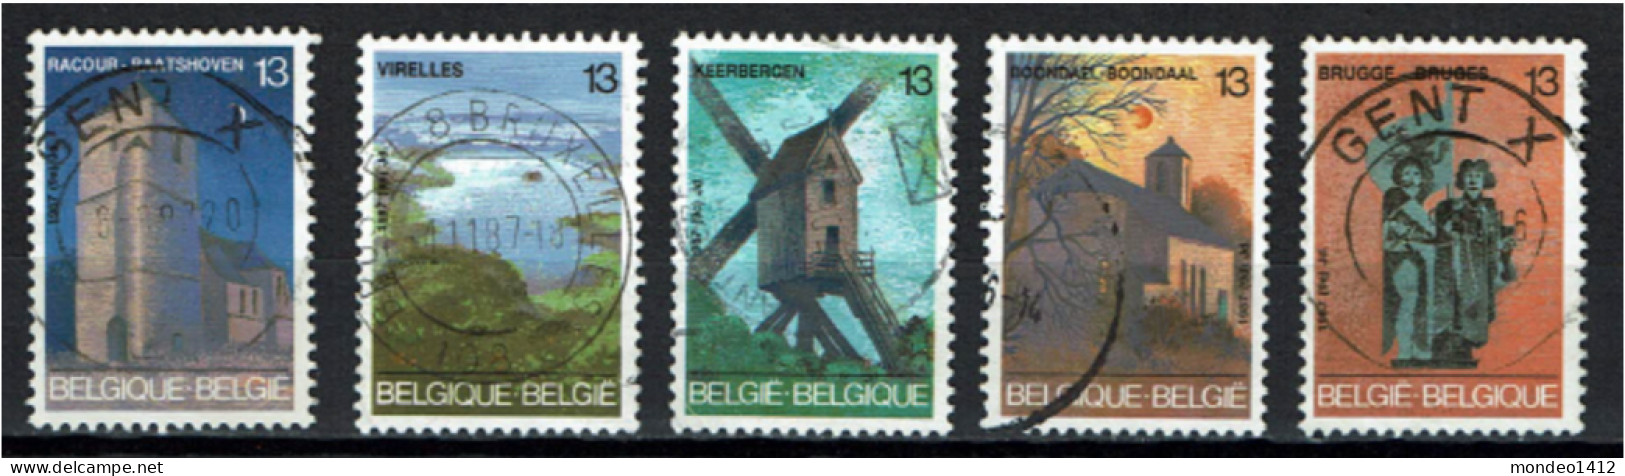 België 1987 OBP 2254/2258 - Y&T 2254/58 - Toerisme, Raatshoven, Chimay, Keerbergen, Brussel, Brugge - Gebruikt